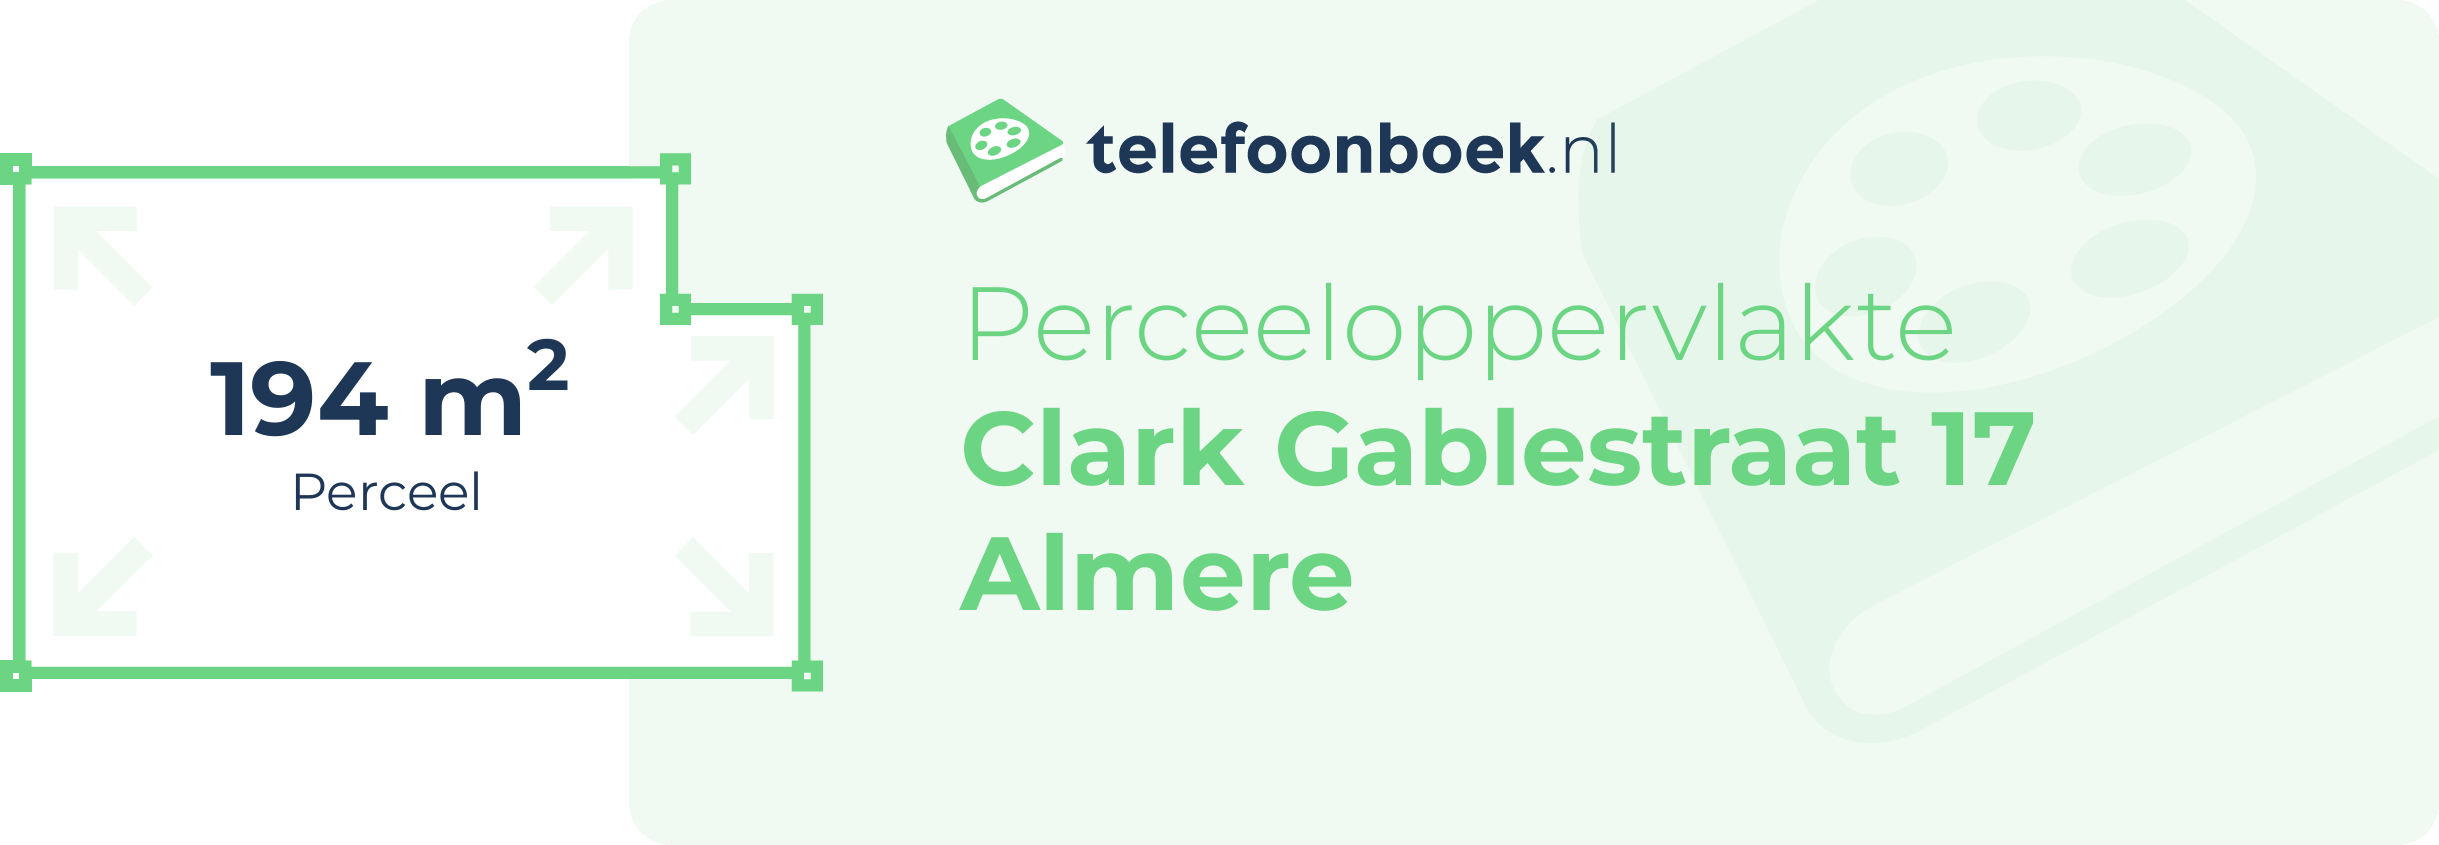 Perceeloppervlakte Clark Gablestraat 17 Almere